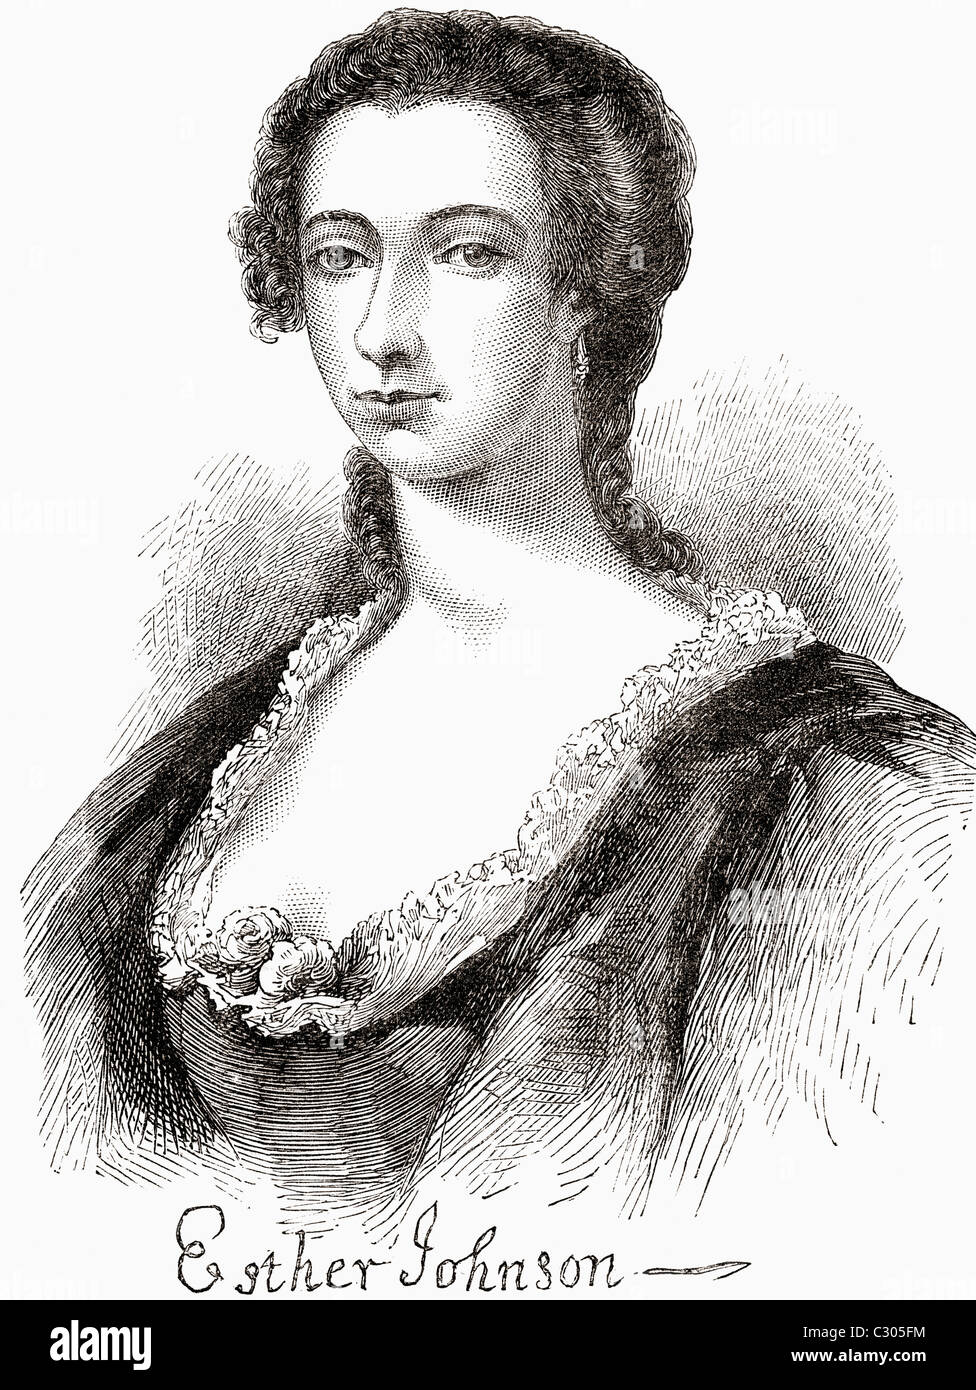 Esther Johnson ,1681 - 1729. Ami anglais de Jonathan Swift, connu sous le nom de Stella. De Voyages de Gulliver publié c.1875 Banque D'Images